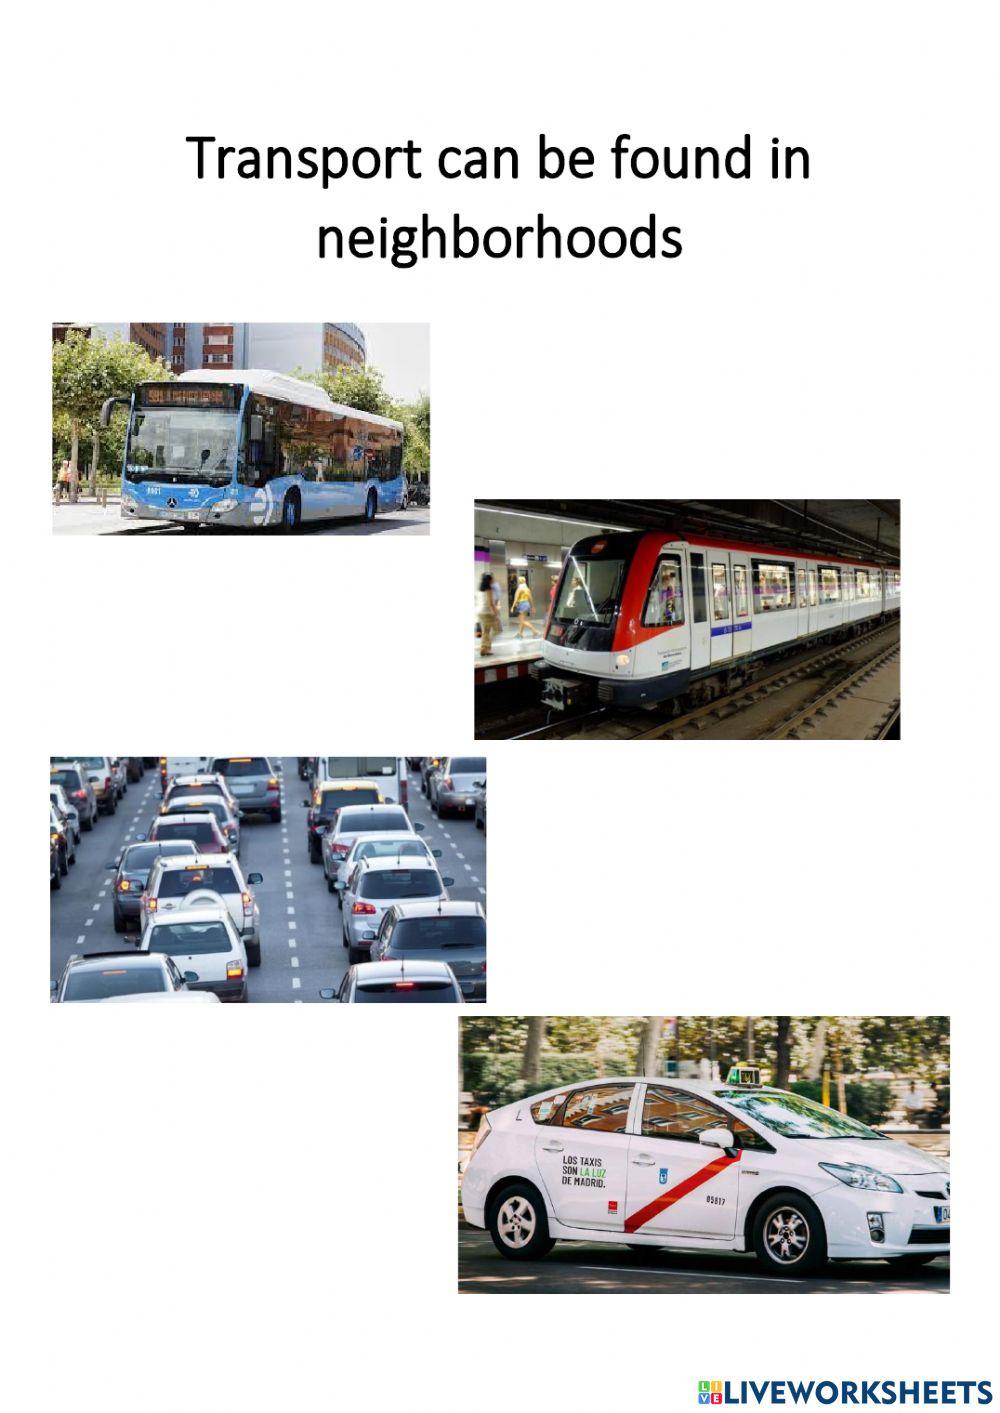 Types of transport in neighborhoods